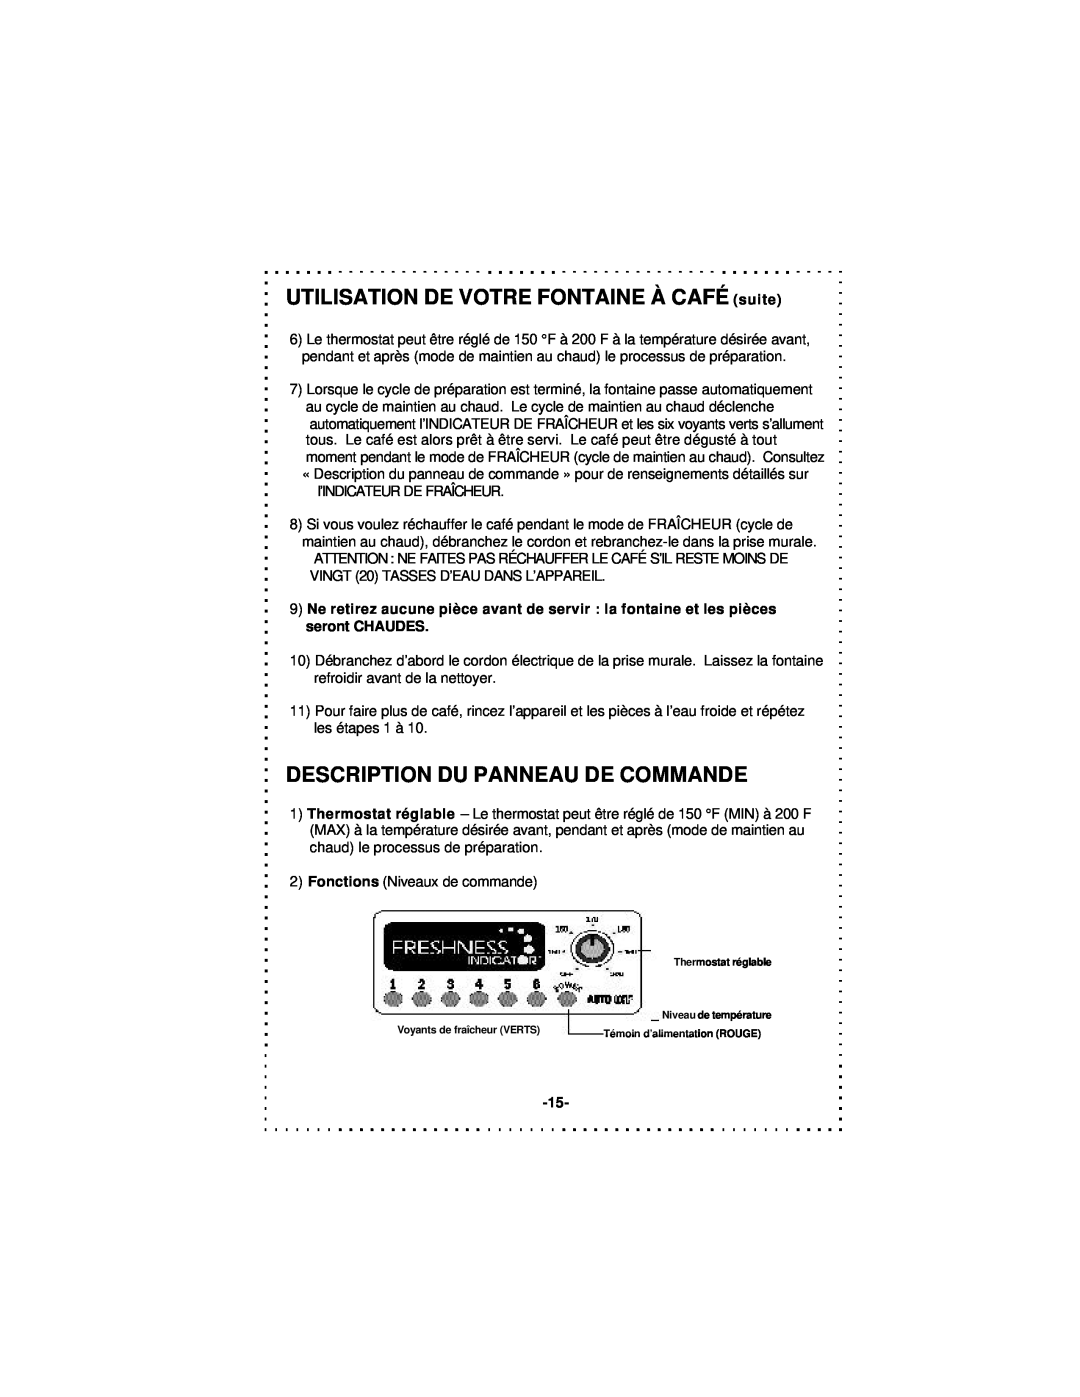 DeLonghi DCU50T Series instruction manual UTILISATION DE VOTRE FONTAINE À CAFÉ suite, Description Du Panneau De Commande 